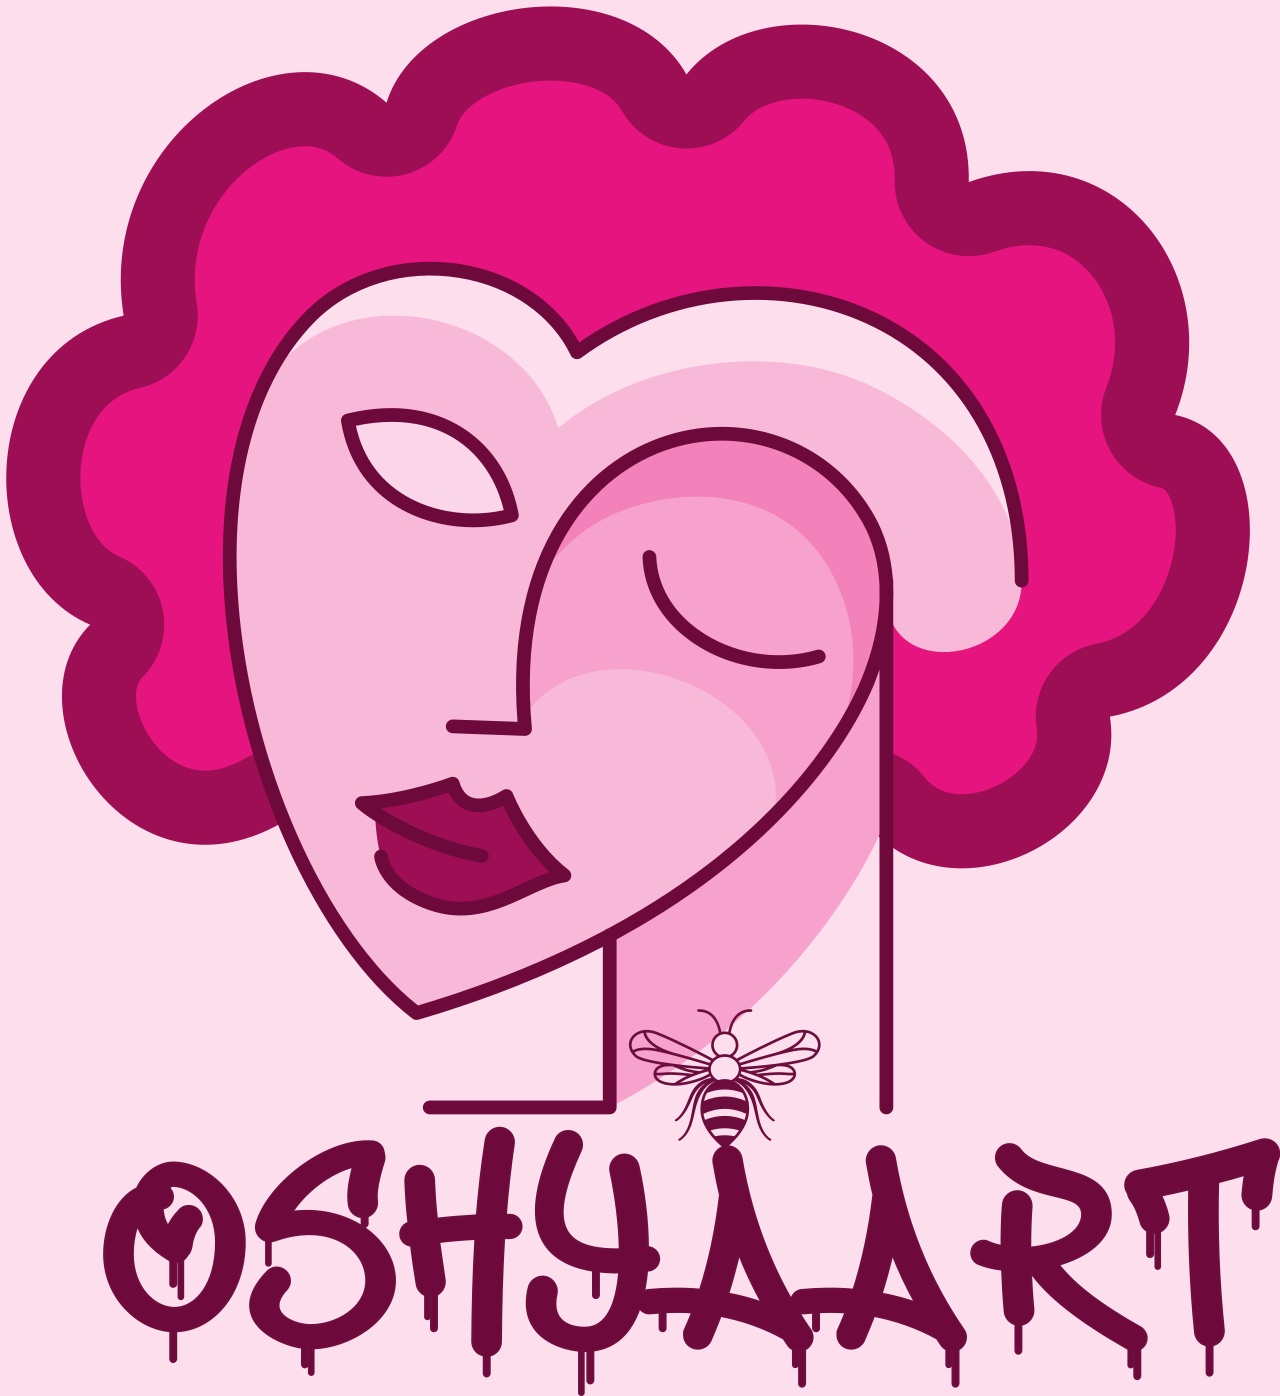 Oshyaart 's logo